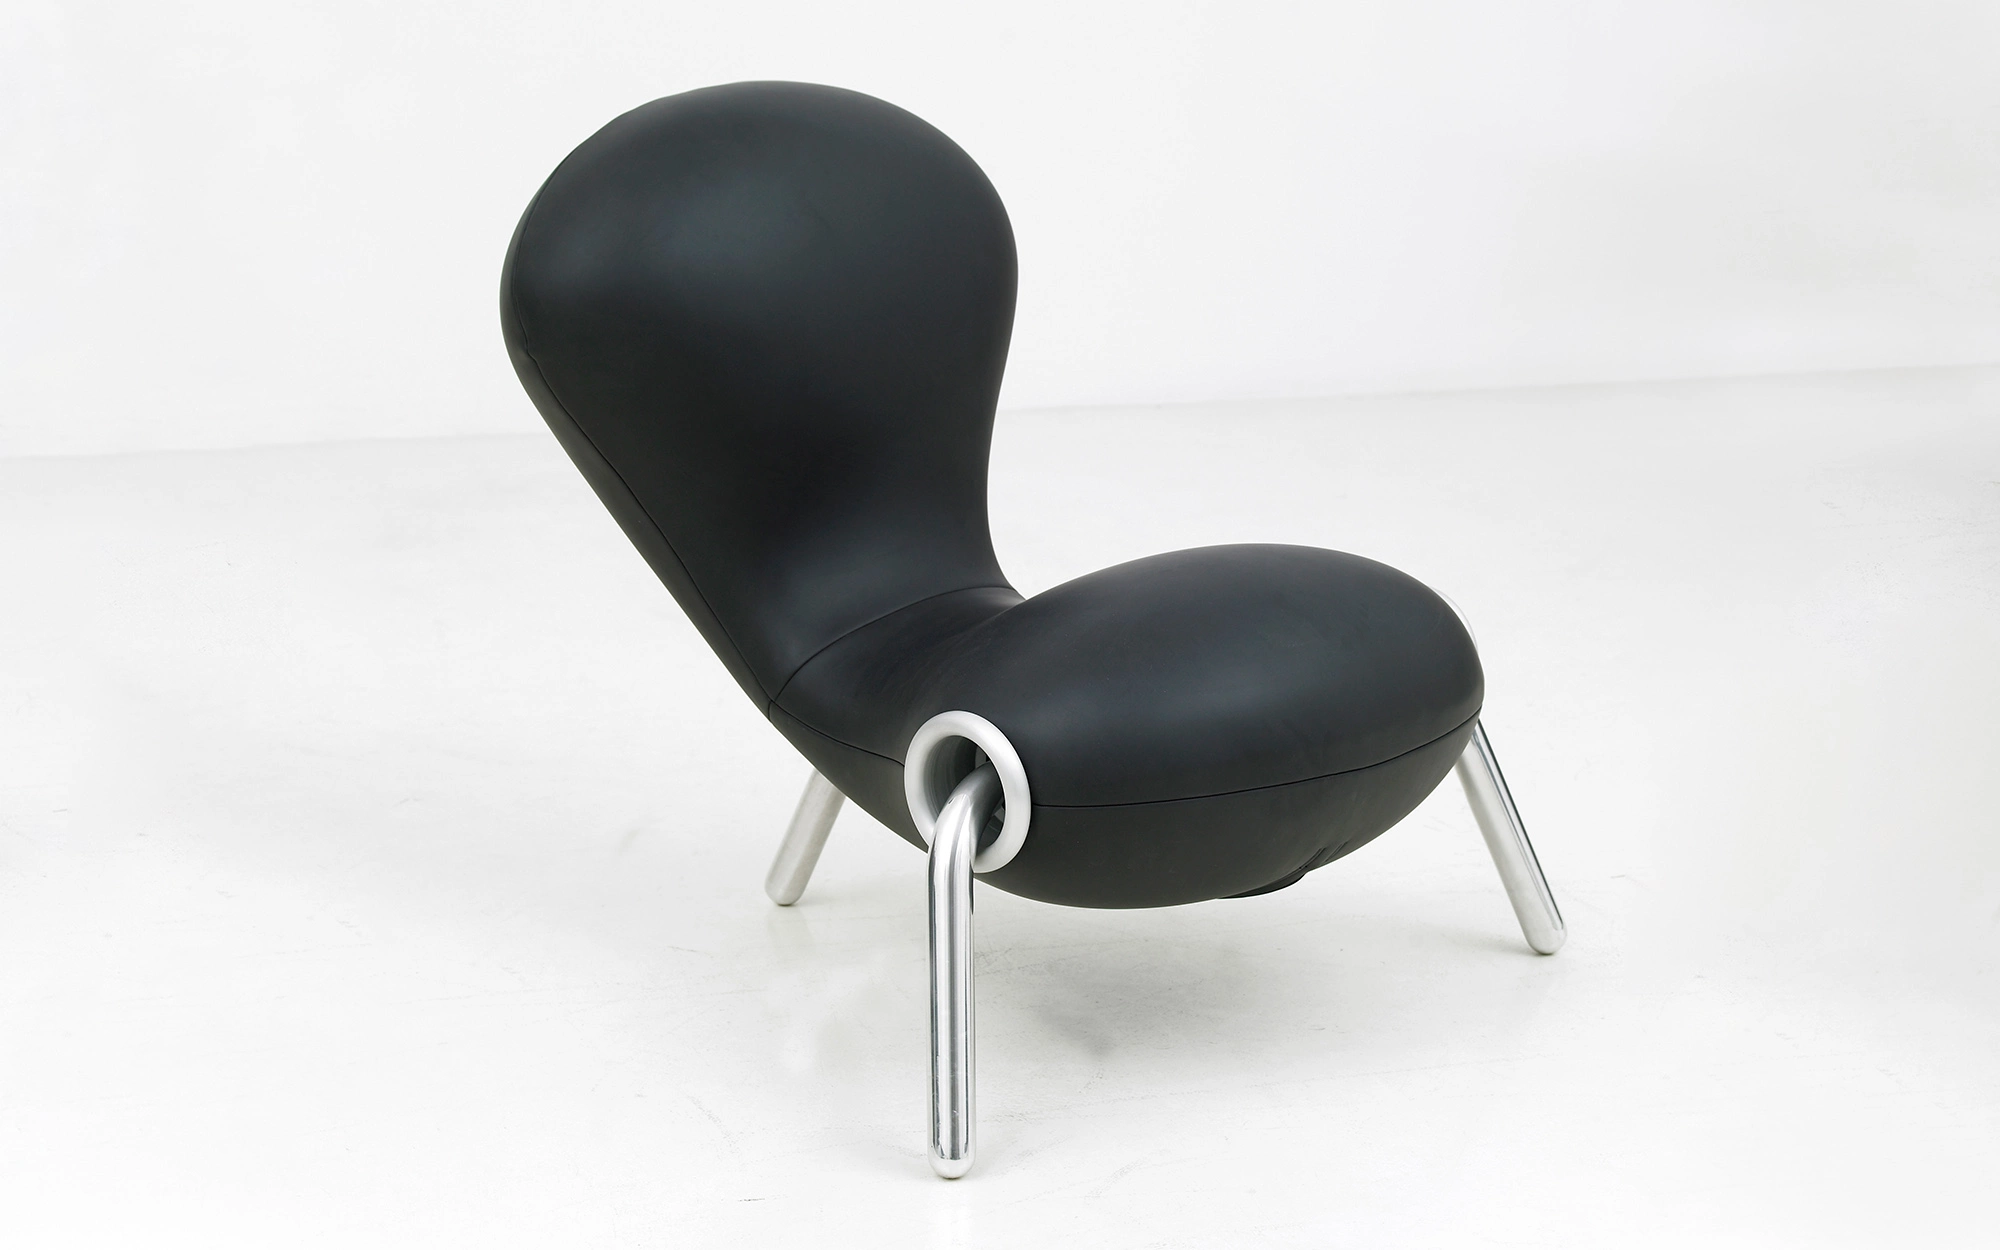 Embryo Chair - Marc Newson - Lucas Ratton x kamel mennour x Galerie kreo x Jacques Lacoste @Saint-Tropez.